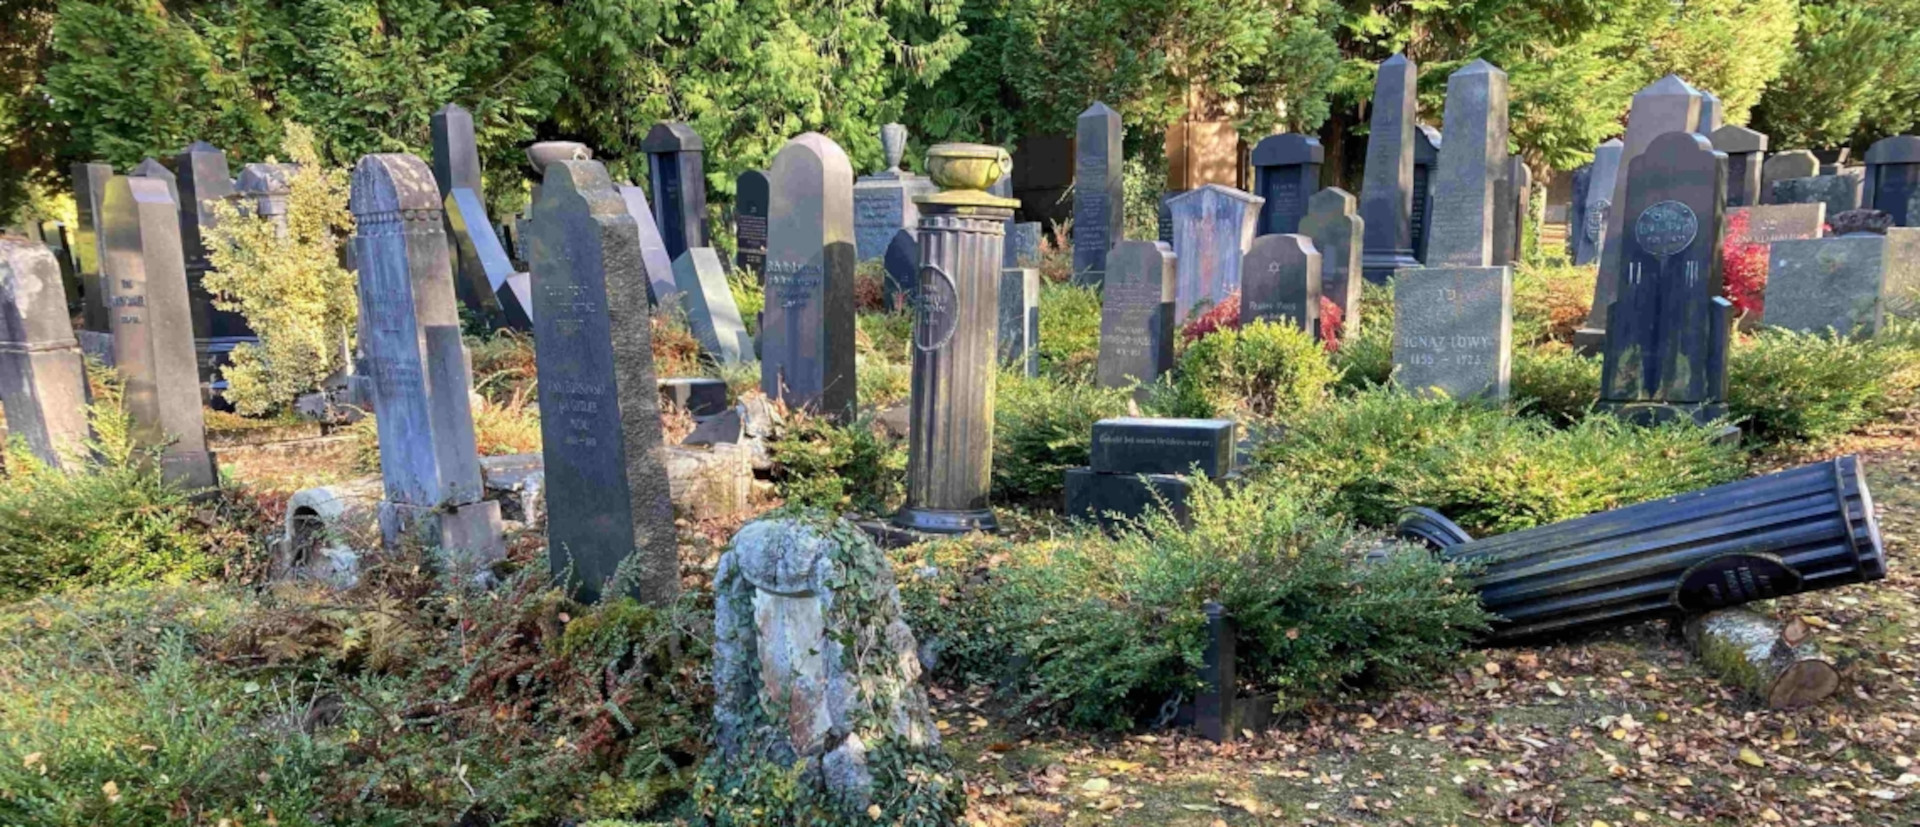 Des tombes ont été retrouvées renversées dans le nouveau cimetière juif de Saint-Gall | © Police cantonal de Saint-Gall